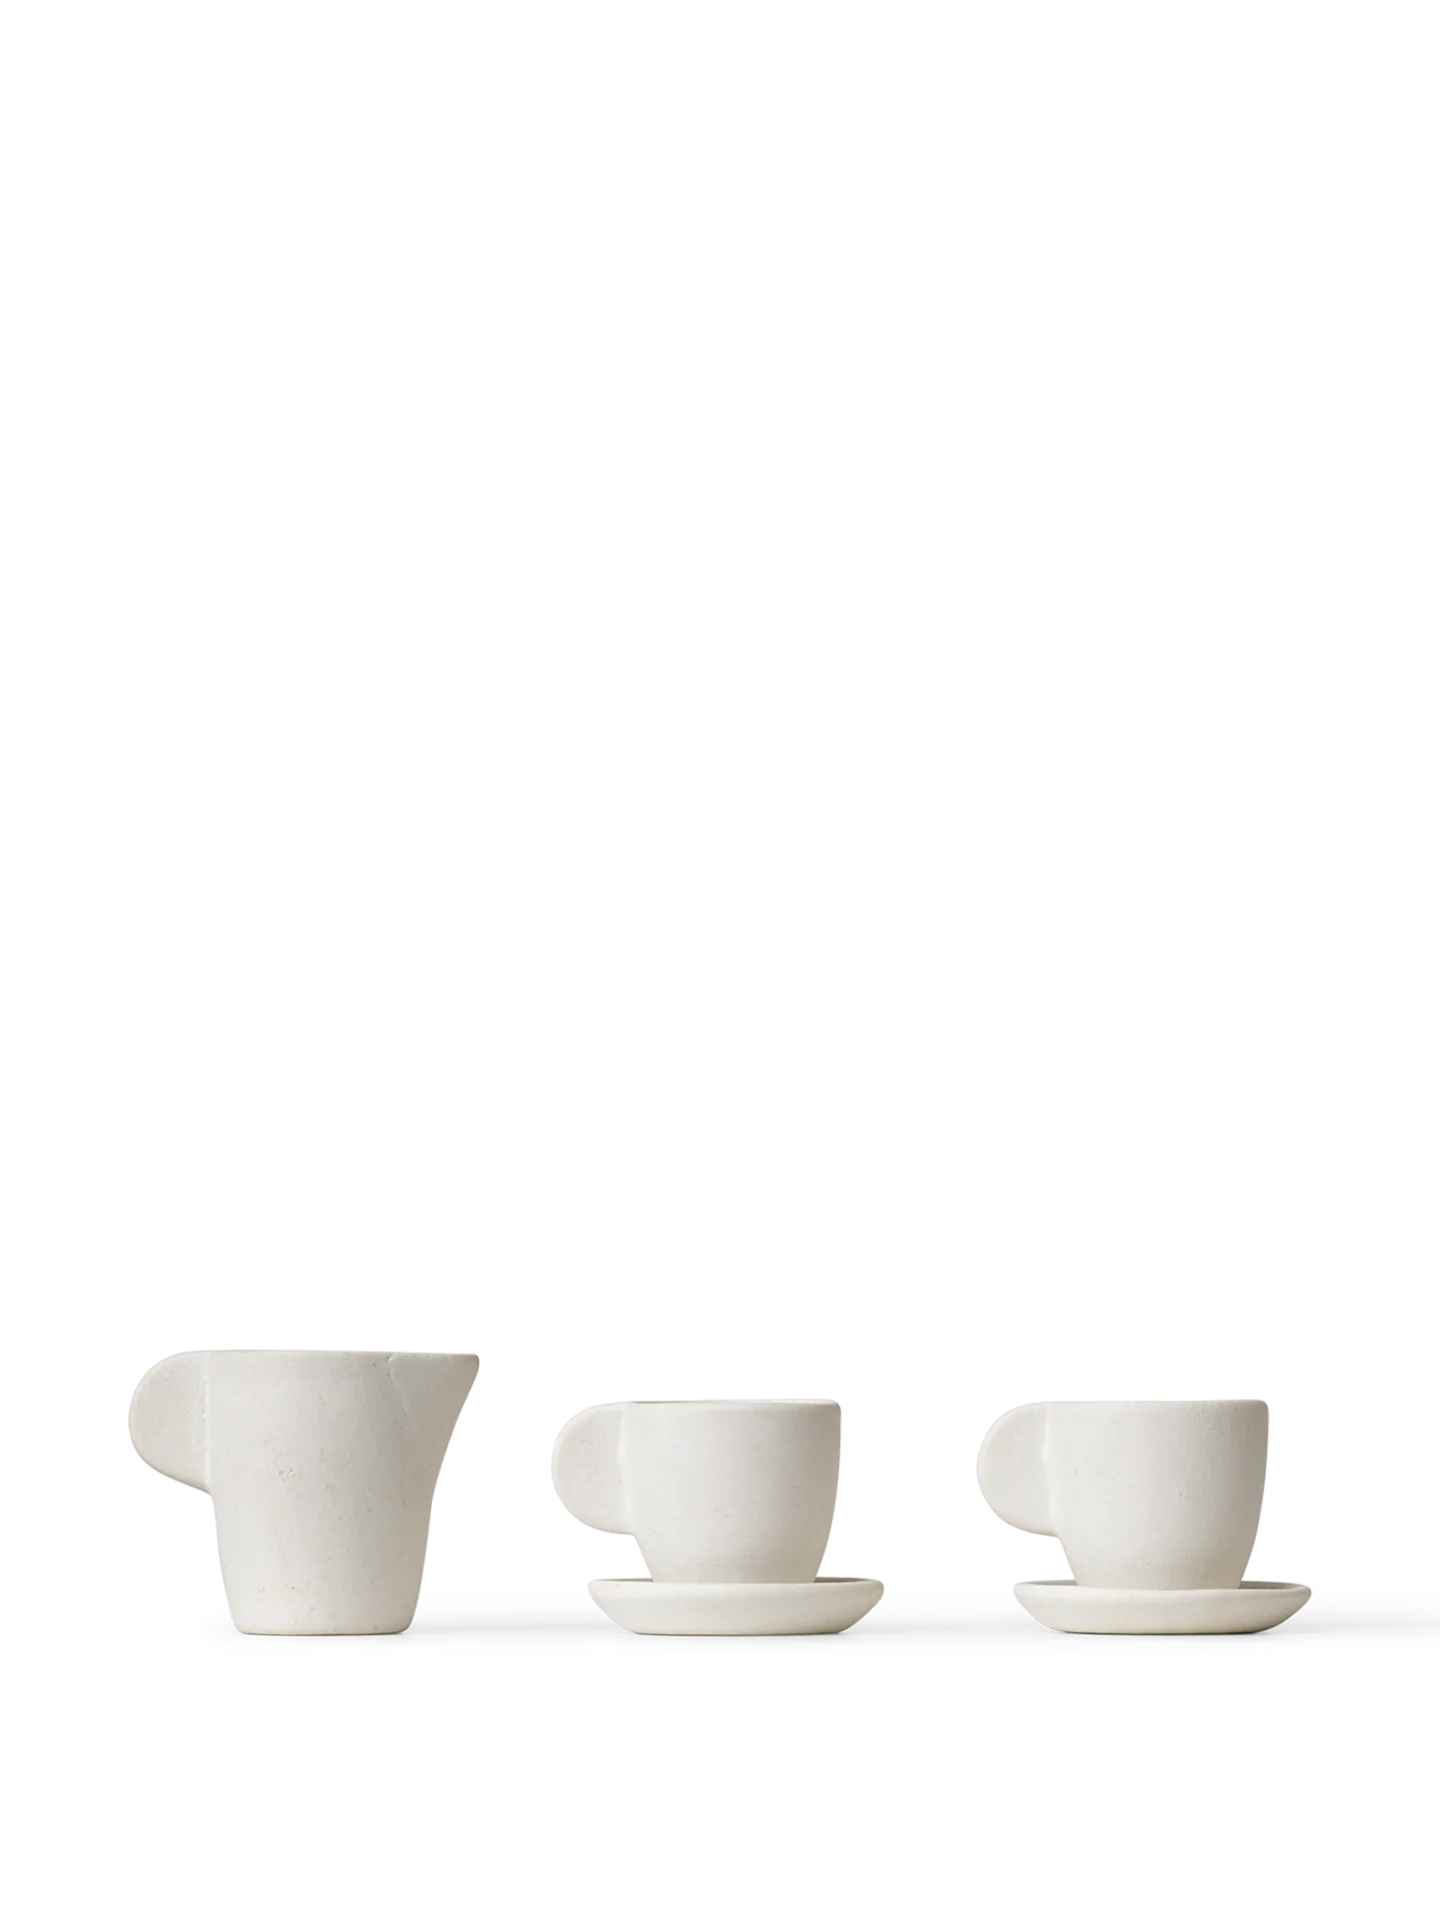 Miniature Tea Set - Ceramic Off-White